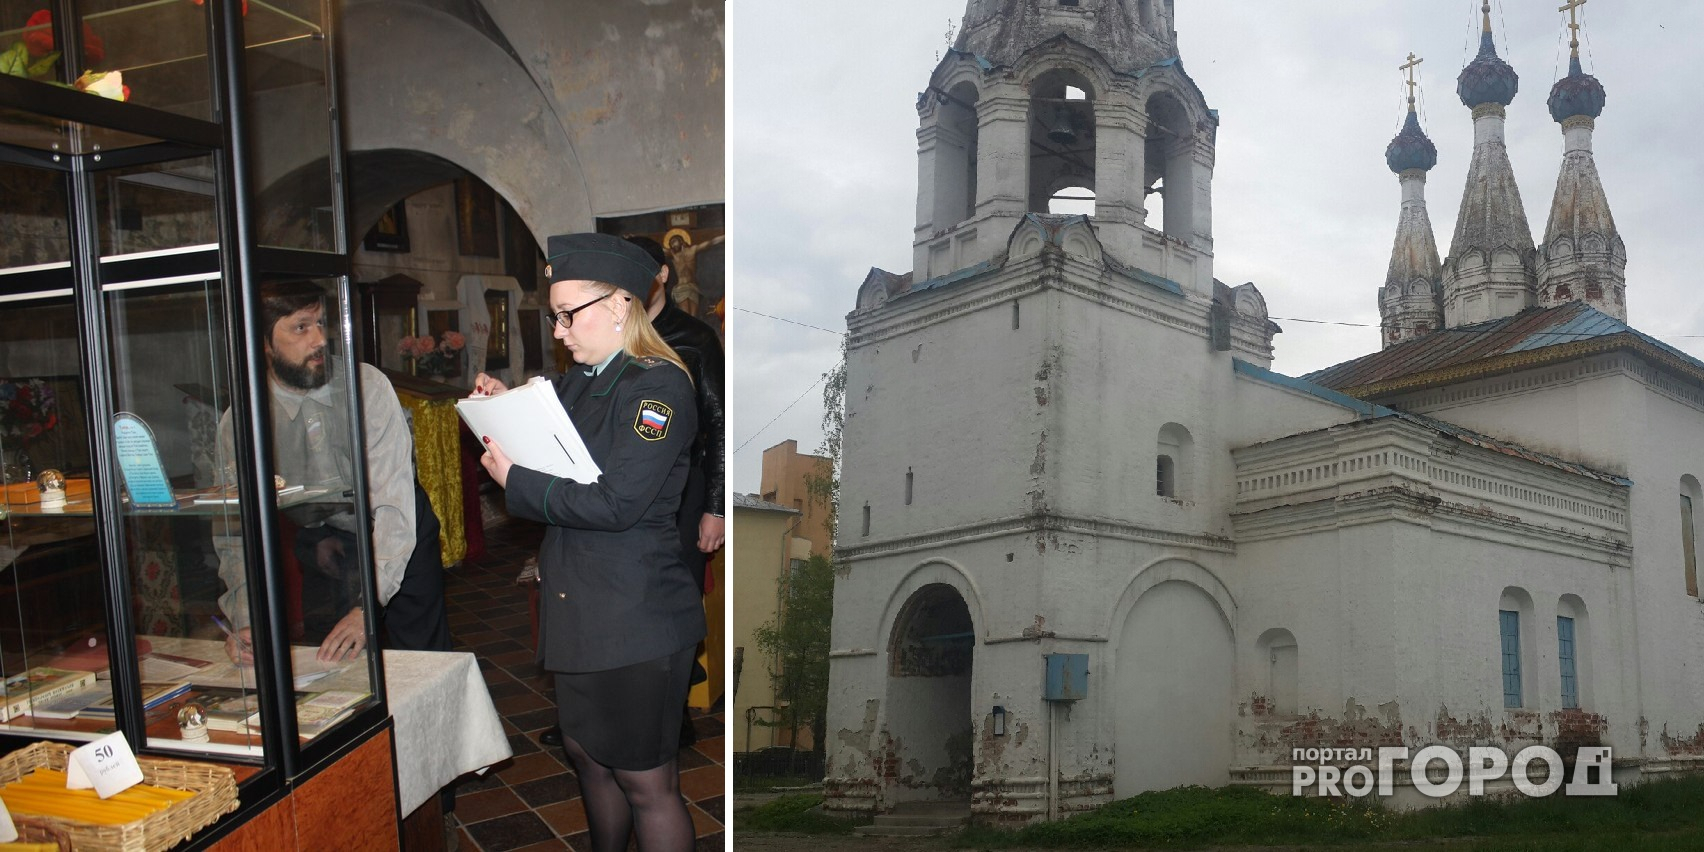 Ярославский храм, который оккупировал расстрига, принадлежит Российской православной автономной церкви